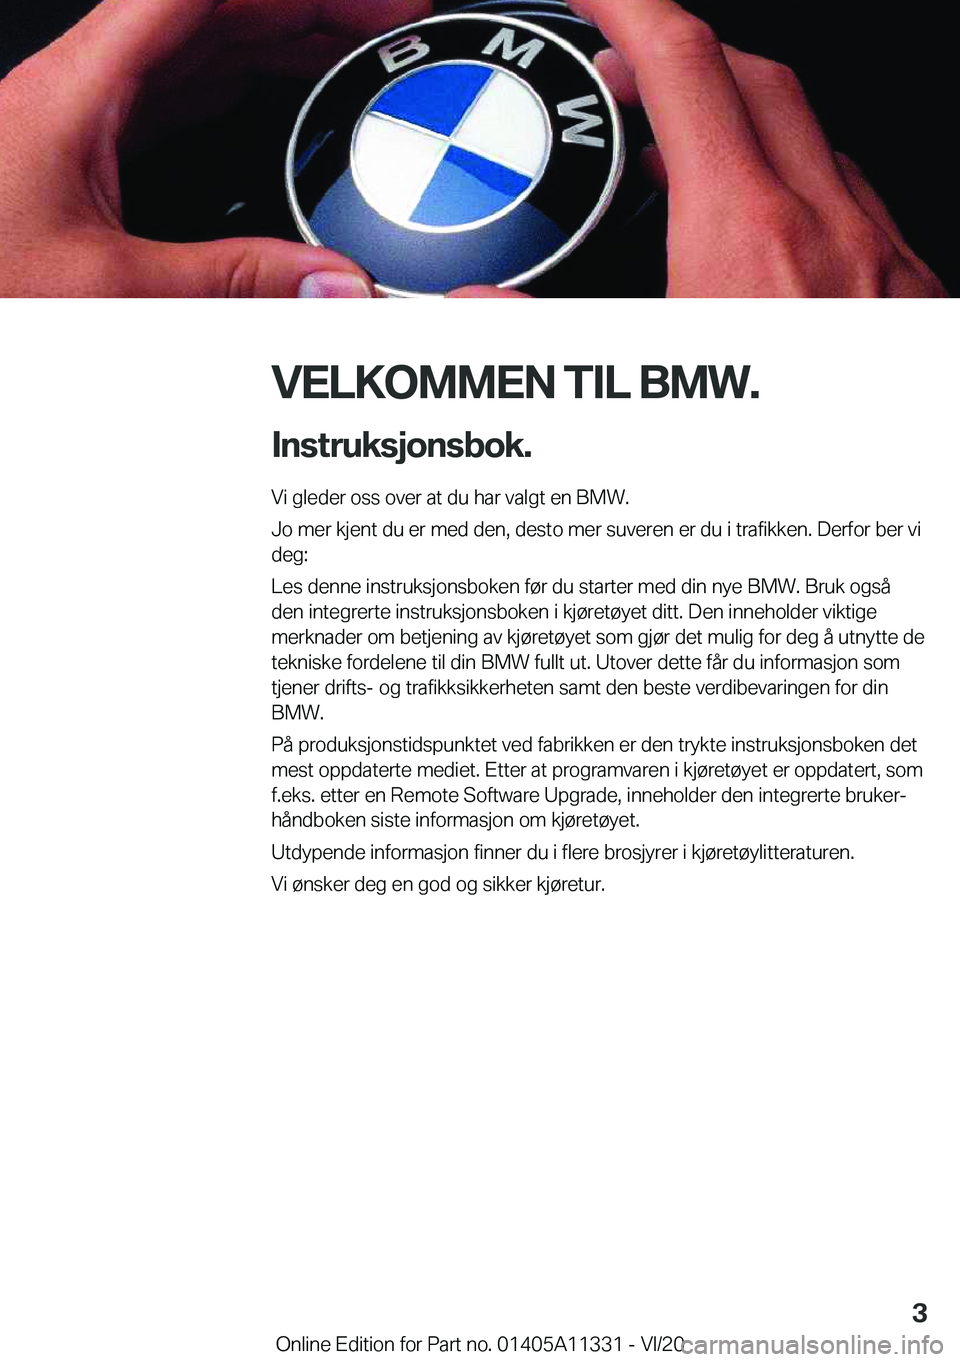 BMW 5 SERIES 2021  InstruksjonsbØker (in Norwegian) �V�E�L�K�O�M�M�E�N��T�I�L��B�M�W�.�I�n�s�t�r�u�k�s�j�o�n�s�b�o�k�.
�V�i��g�l�e�d�e�r��o�s�s��o�v�e�r��a�t��d�u��h�a�r��v�a�l�g�t��e�n��B�M�W�.
�J�o��m�e�r��k�j�e�n�t��d�u��e�r��m�e�d�